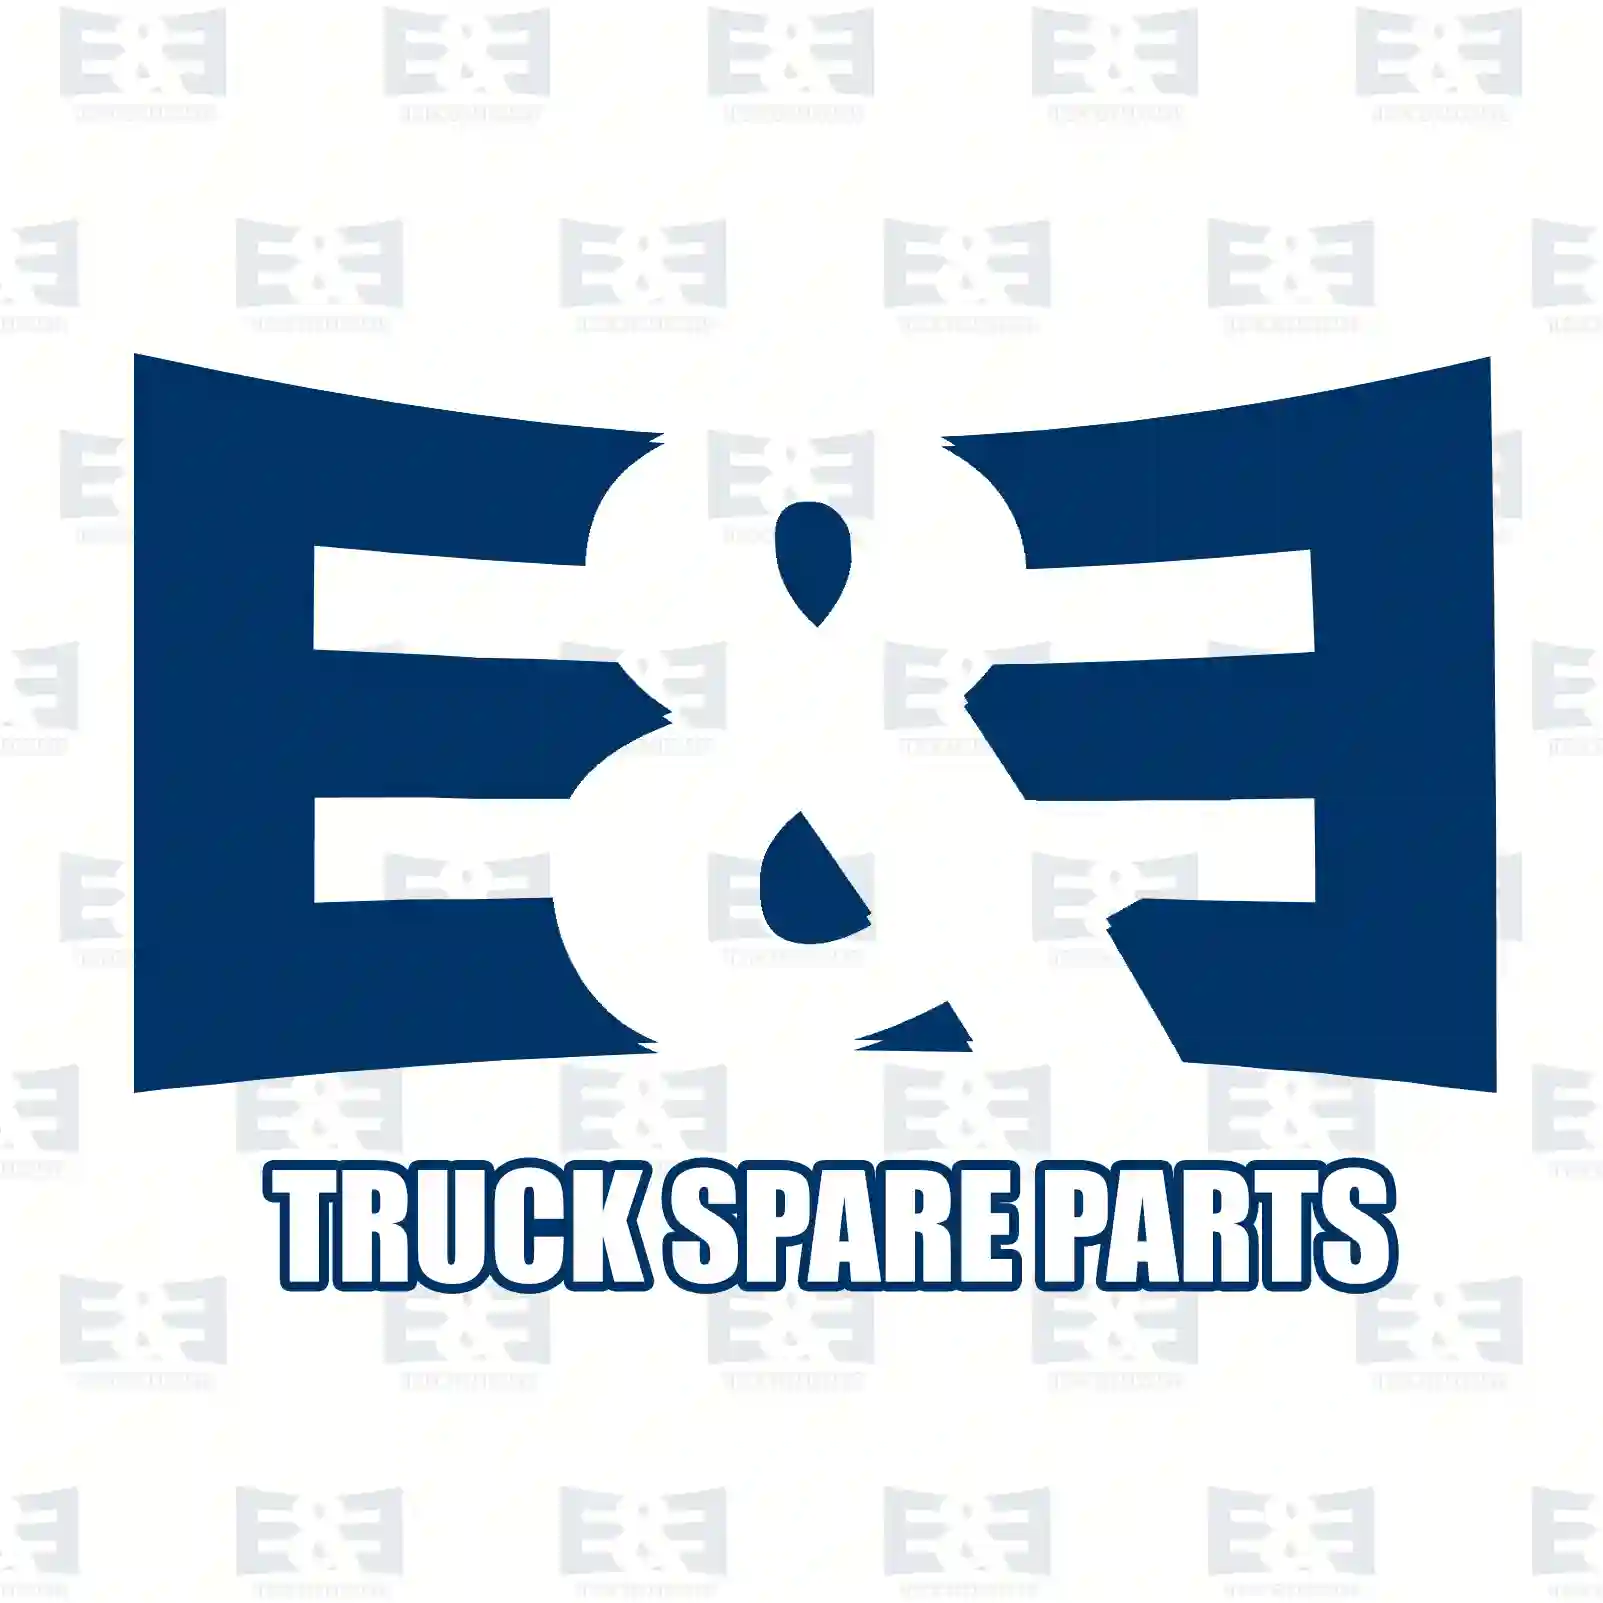 Filler cap, ventilated, 2E2286991, 1295661, 1315785, 1697734, ZG10553-0008 ||  2E2286991 E&E Truck Spare Parts | Truck Spare Parts, Auotomotive Spare Parts Filler cap, ventilated, 2E2286991, 1295661, 1315785, 1697734, ZG10553-0008 ||  2E2286991 E&E Truck Spare Parts | Truck Spare Parts, Auotomotive Spare Parts